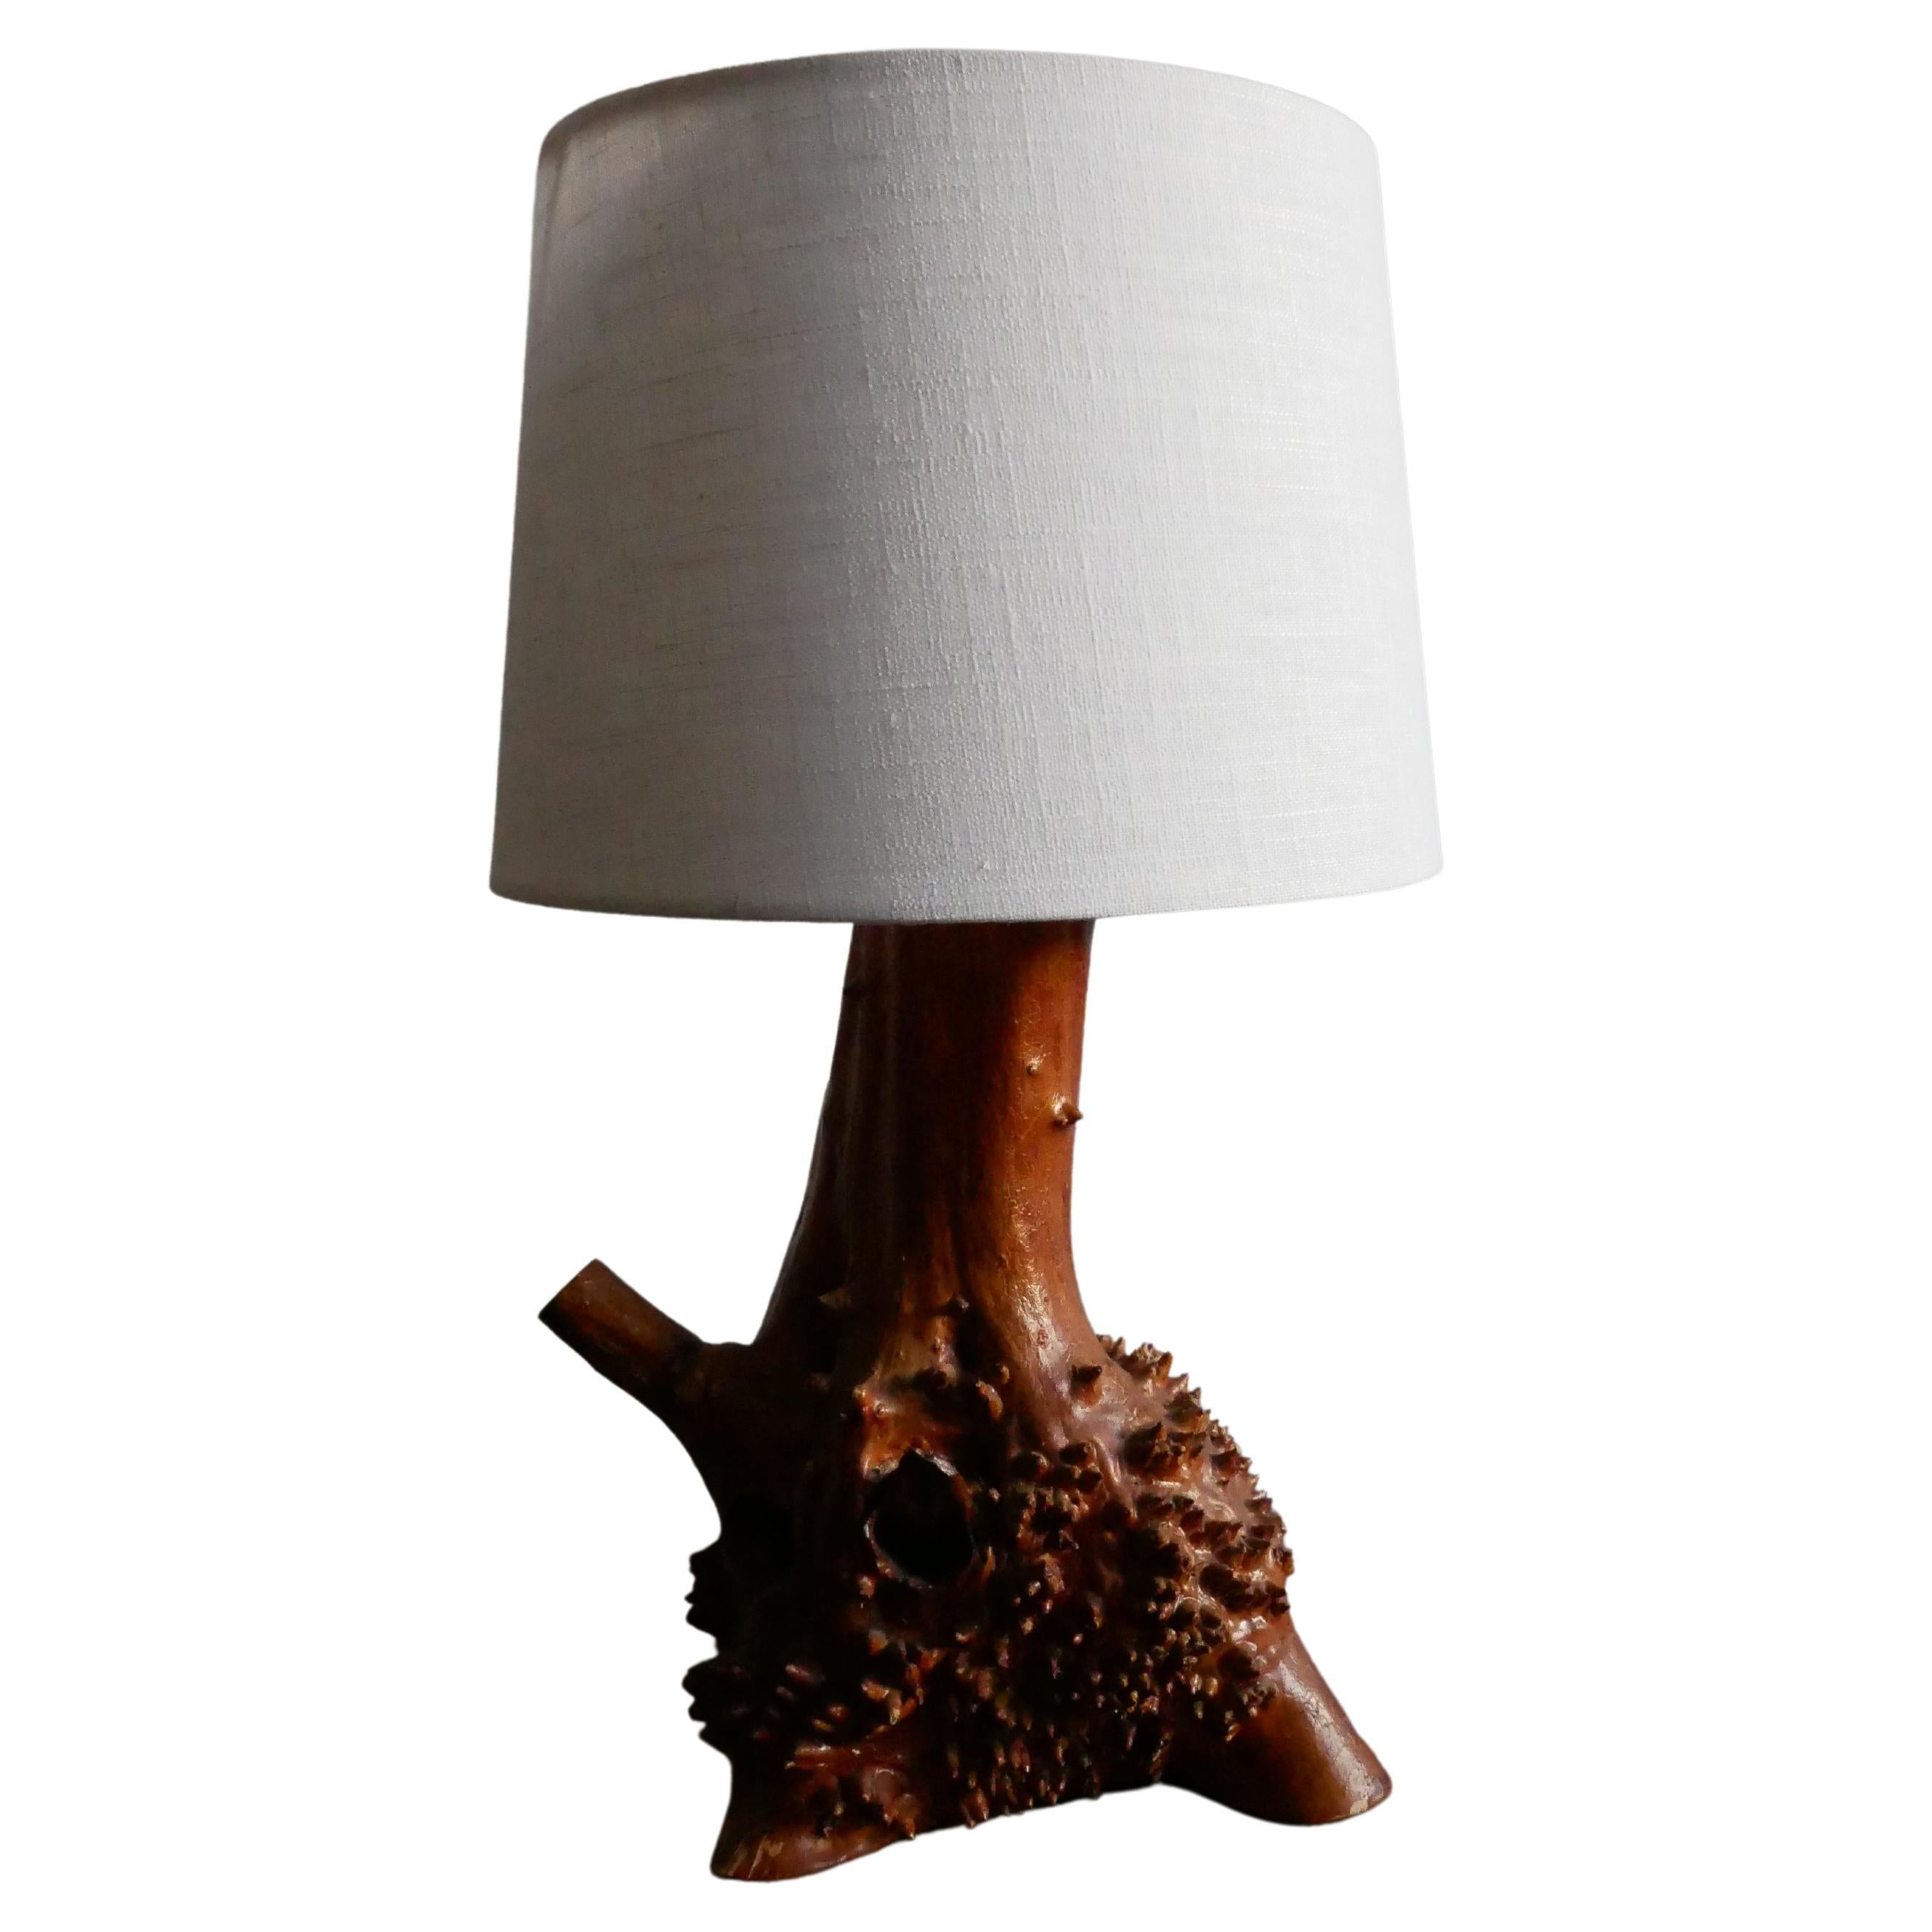 Lampe organique wabi-sabi en bois de ronce, vers 1960.

L'aspect organique et textuel de cette lampe est à sa manière scandinave, quelque chose que l'on peut regarder plusieurs fois et toujours voir quelque chose de nouveau. La façon dont le bois